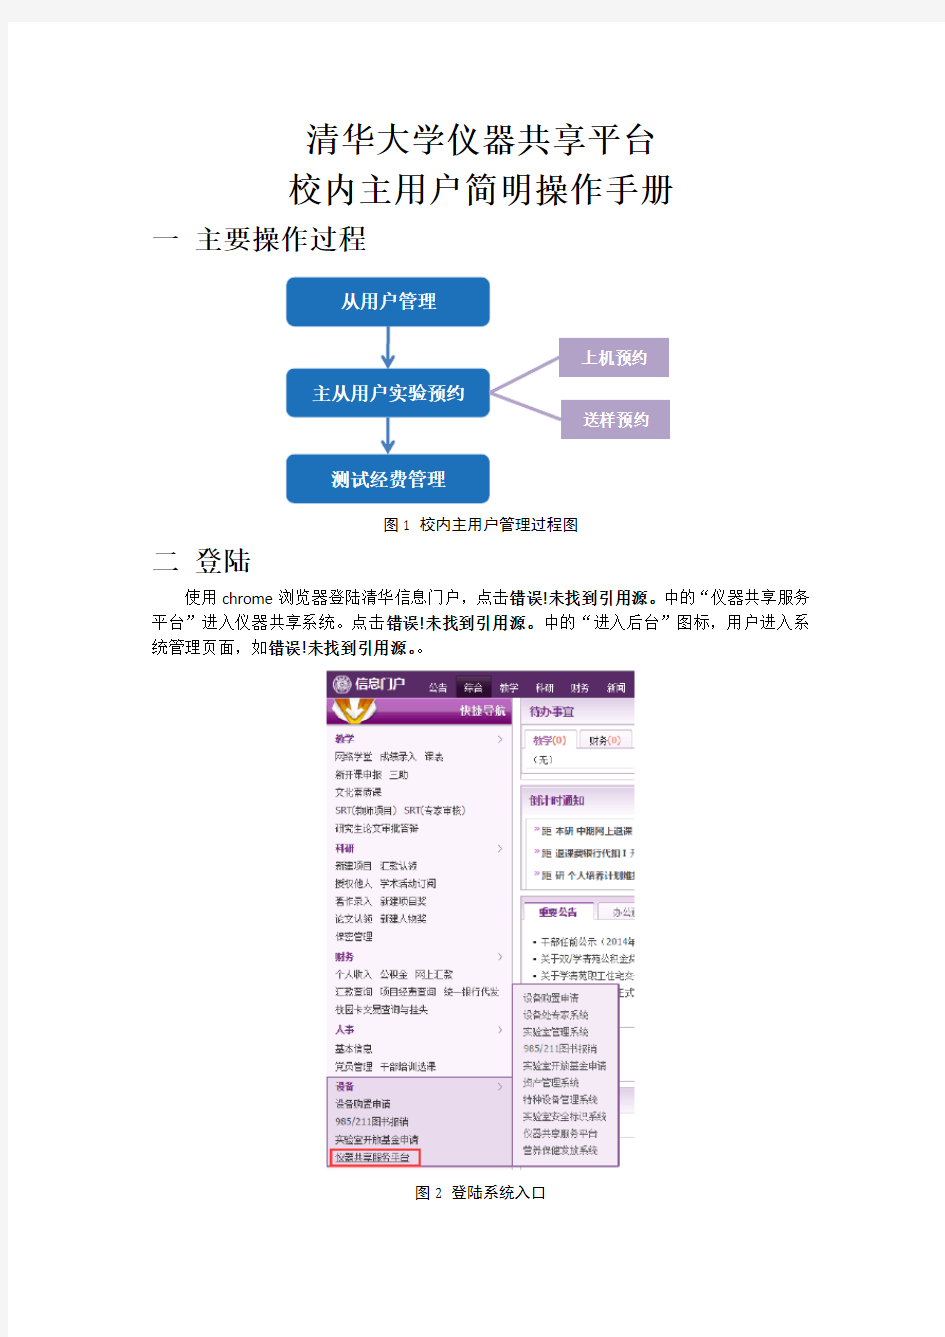 清华大学仪器共享平台校内主用户简明操作手册